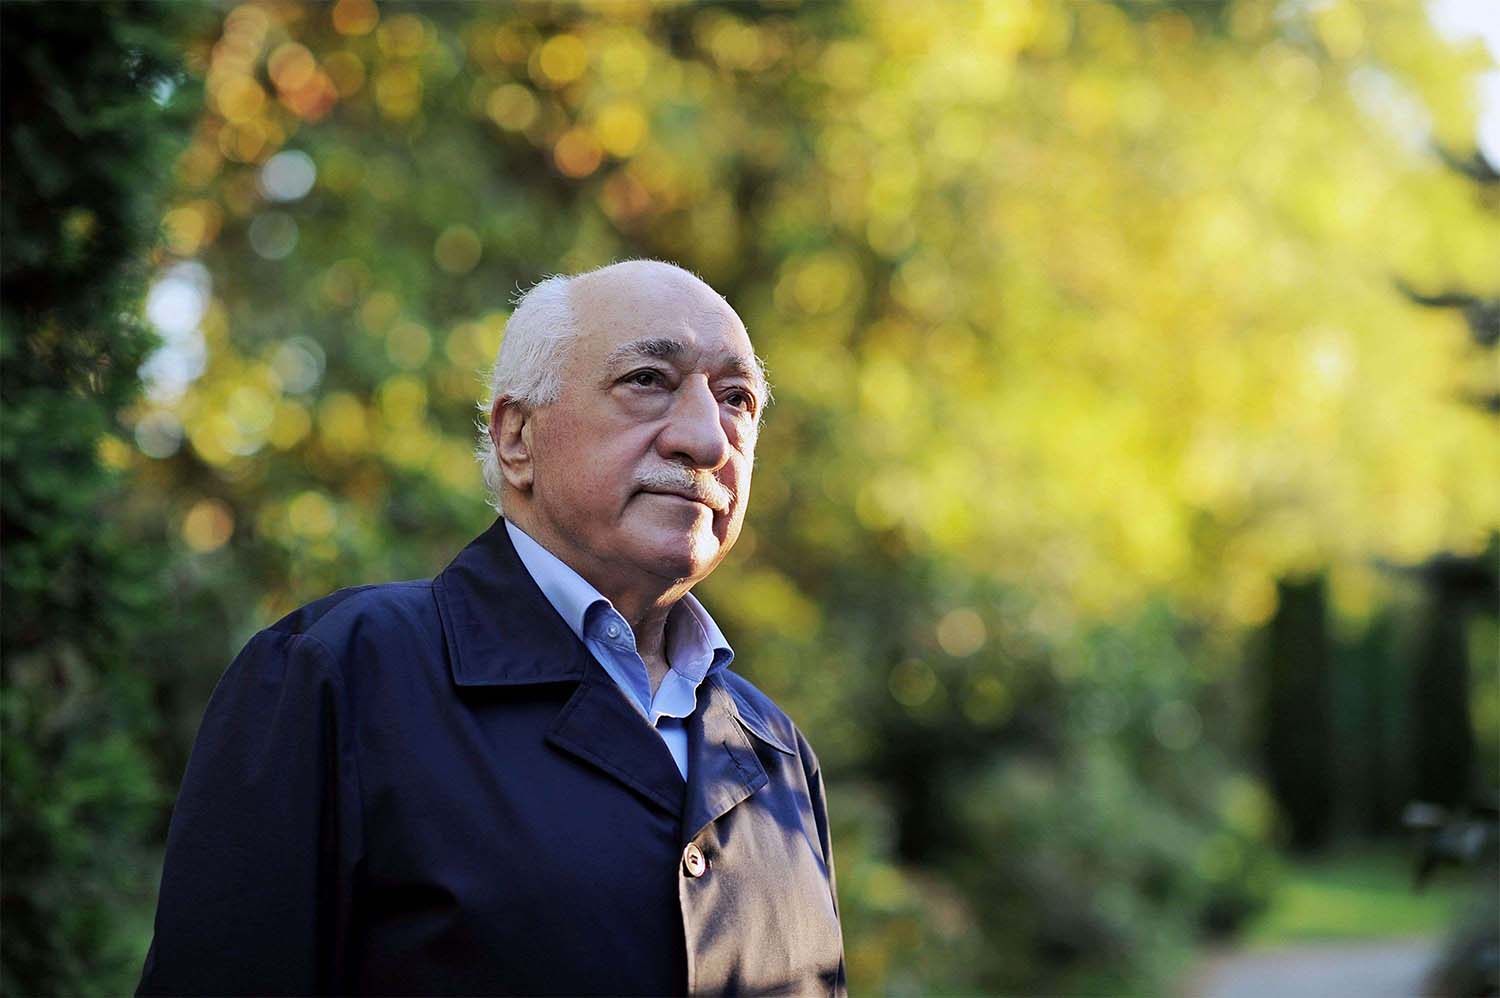 Gulen denies involvement in the 2016 putsch attempt